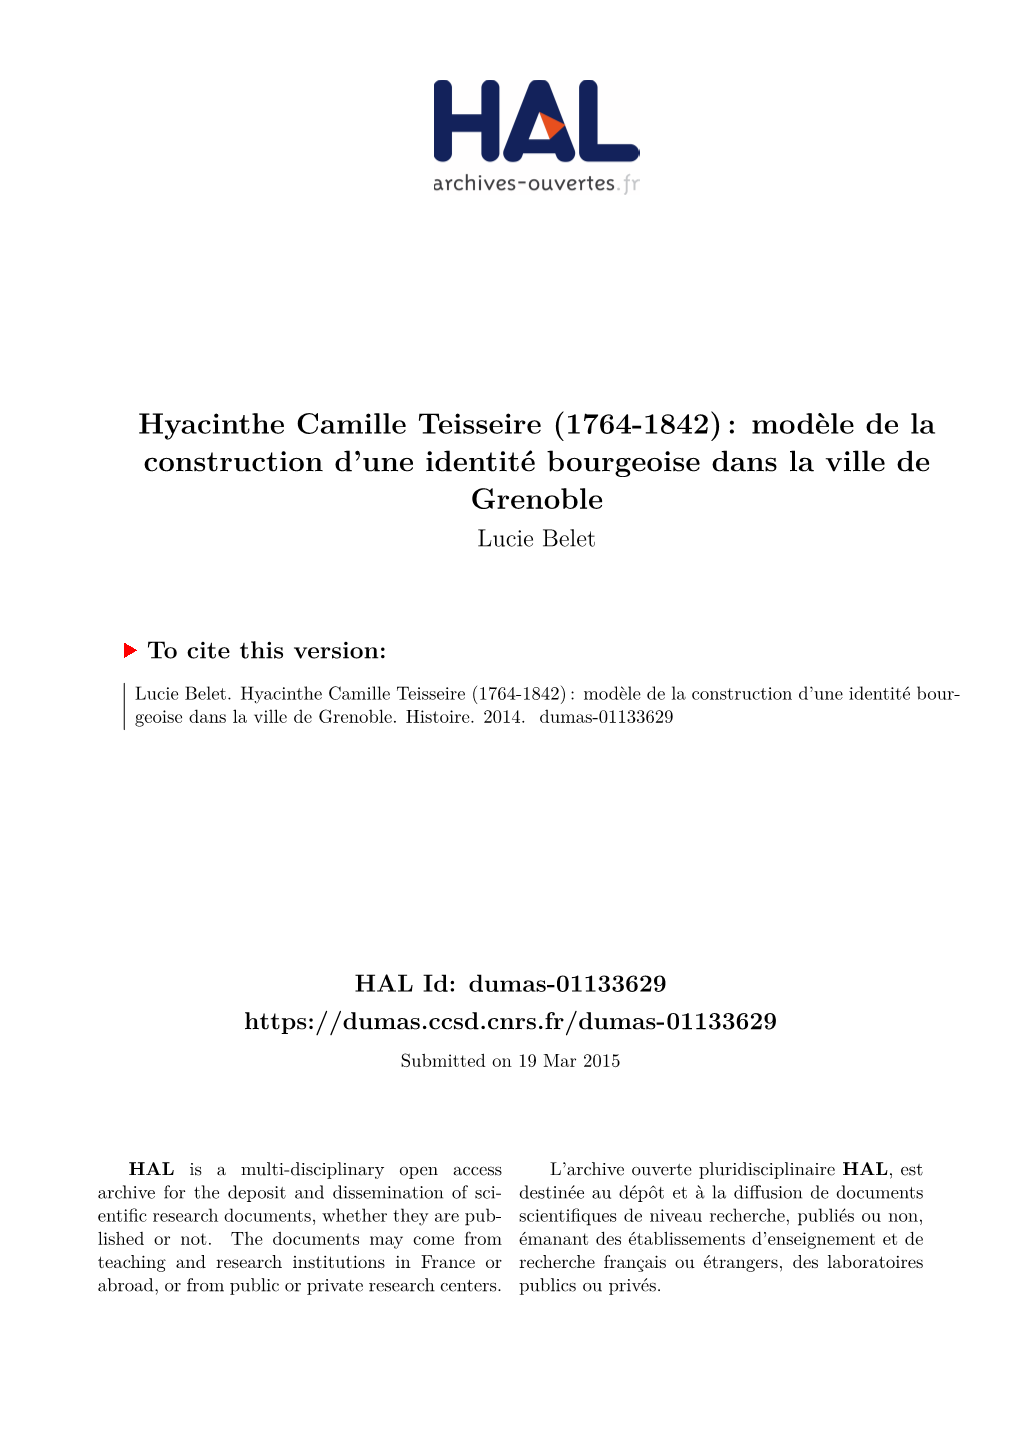 Hyacinthe Camille Teisseire (1764-1842) : Modèle De La Construction D’Une Identité Bourgeoise Dans La Ville De Grenoble Lucie Belet